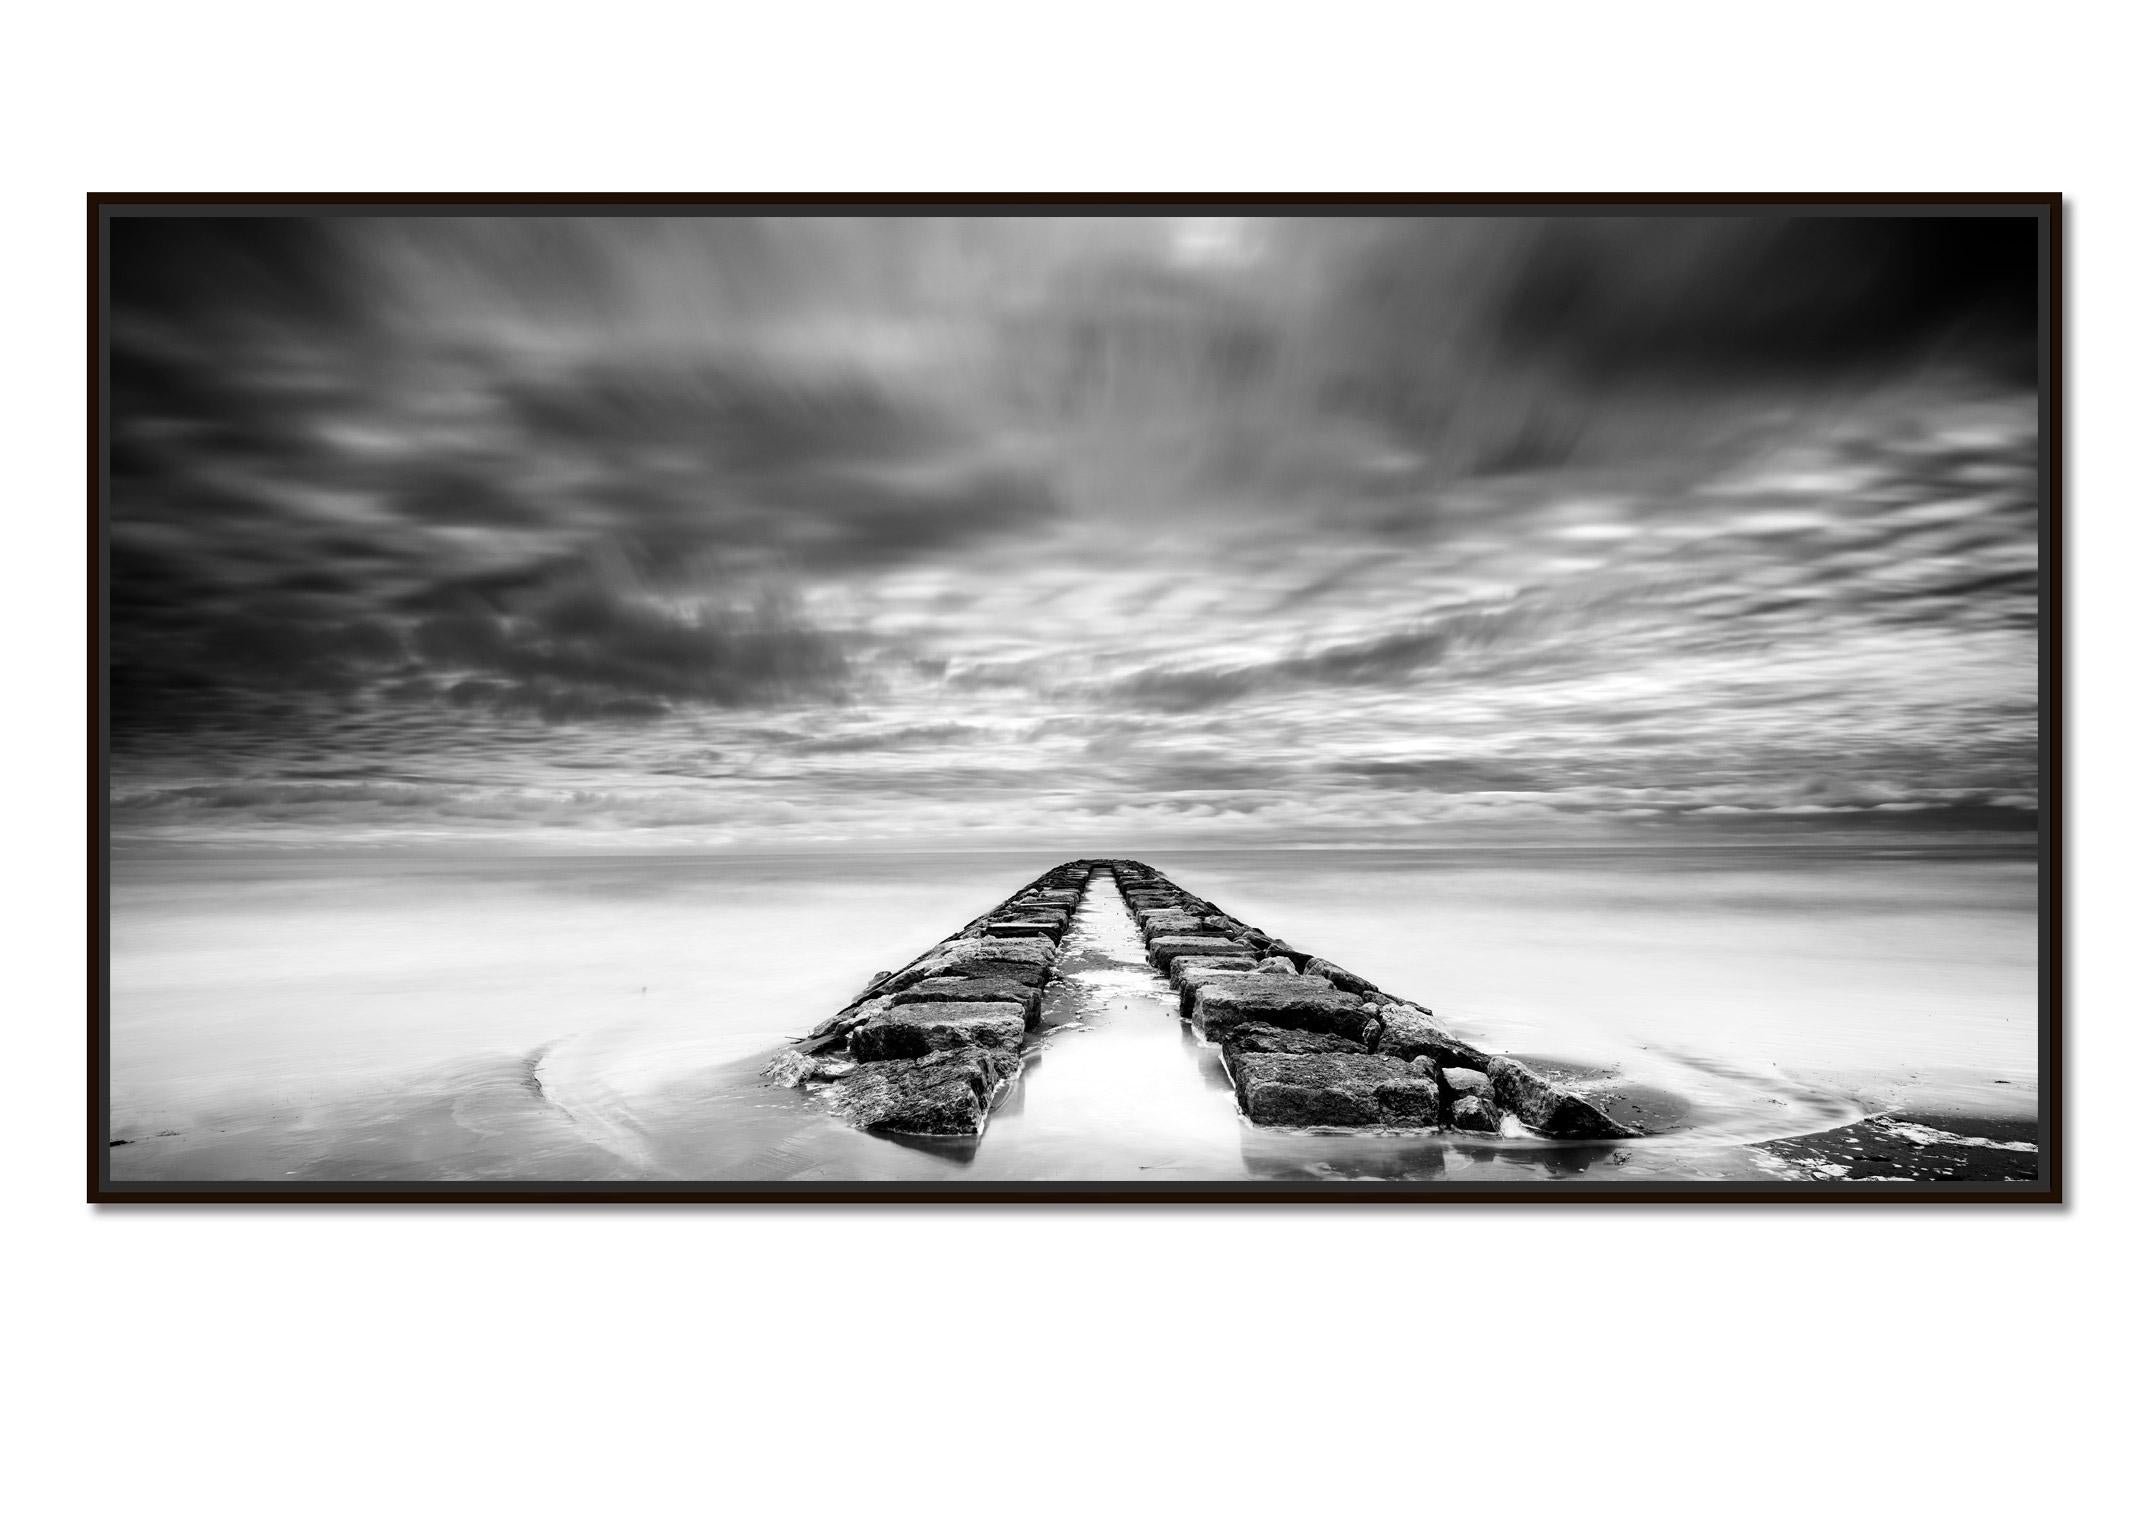 Rock Pier Panorama, orageux, nuageux, photographie d'art en noir et blanc, paysage - Photograph de Gerald Berghammer